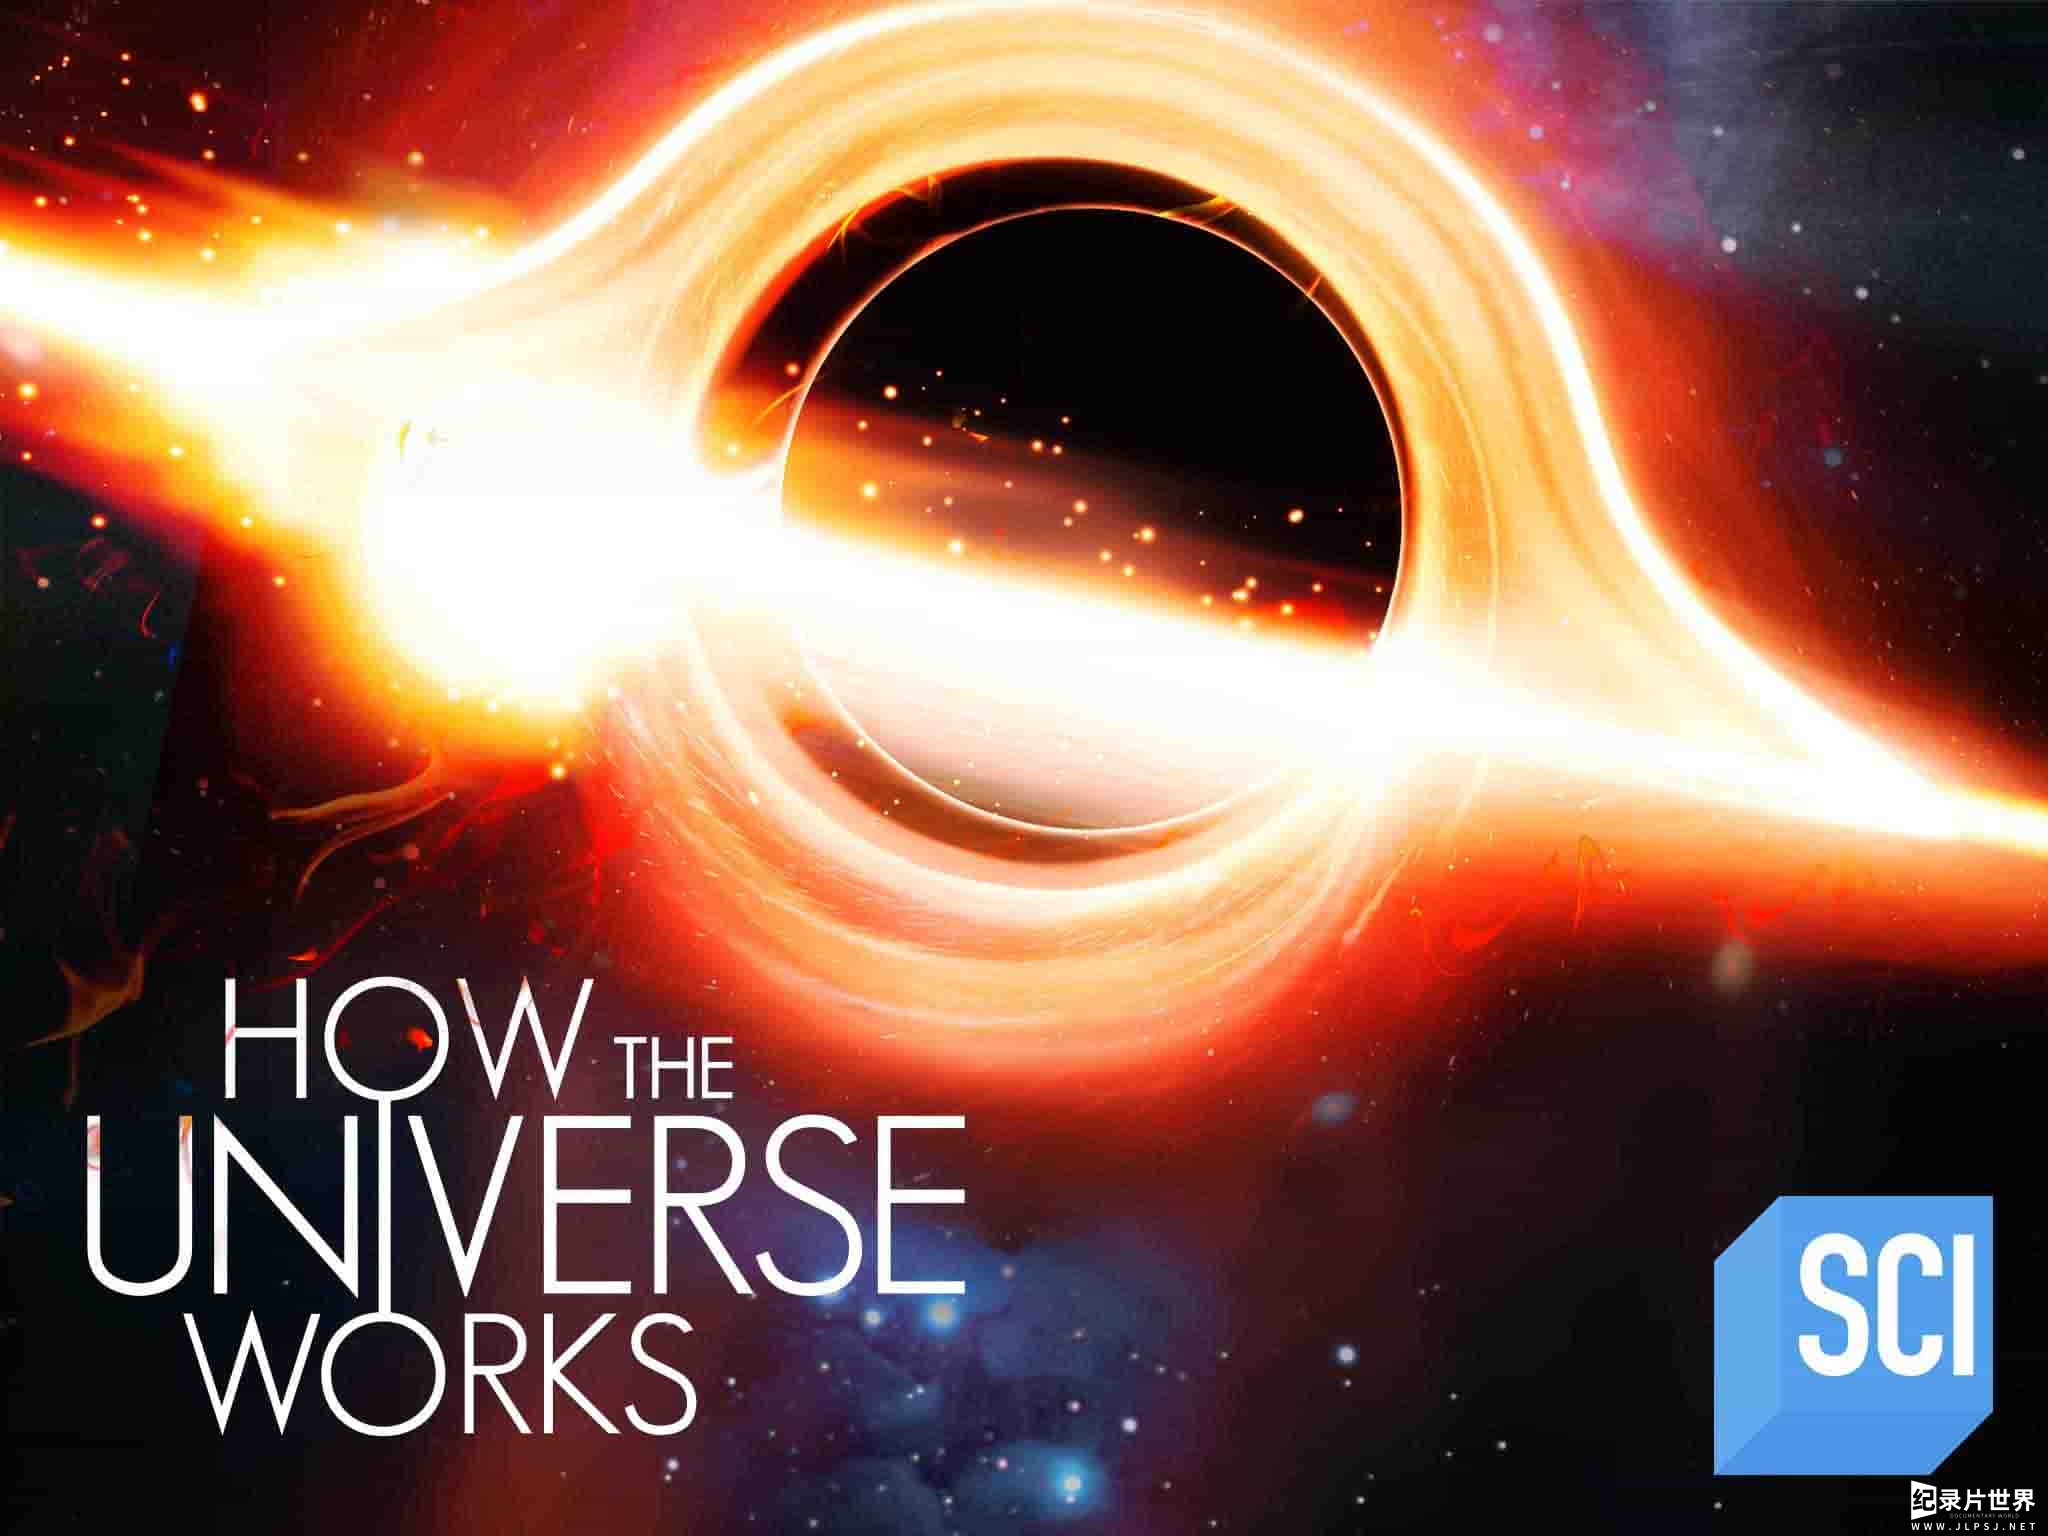 美国纪录片/宇宙纪录片《了解宇宙如何运行的/宇宙解码/解读宇宙/宇宙有道理 How The Universe Works》第10季全10集